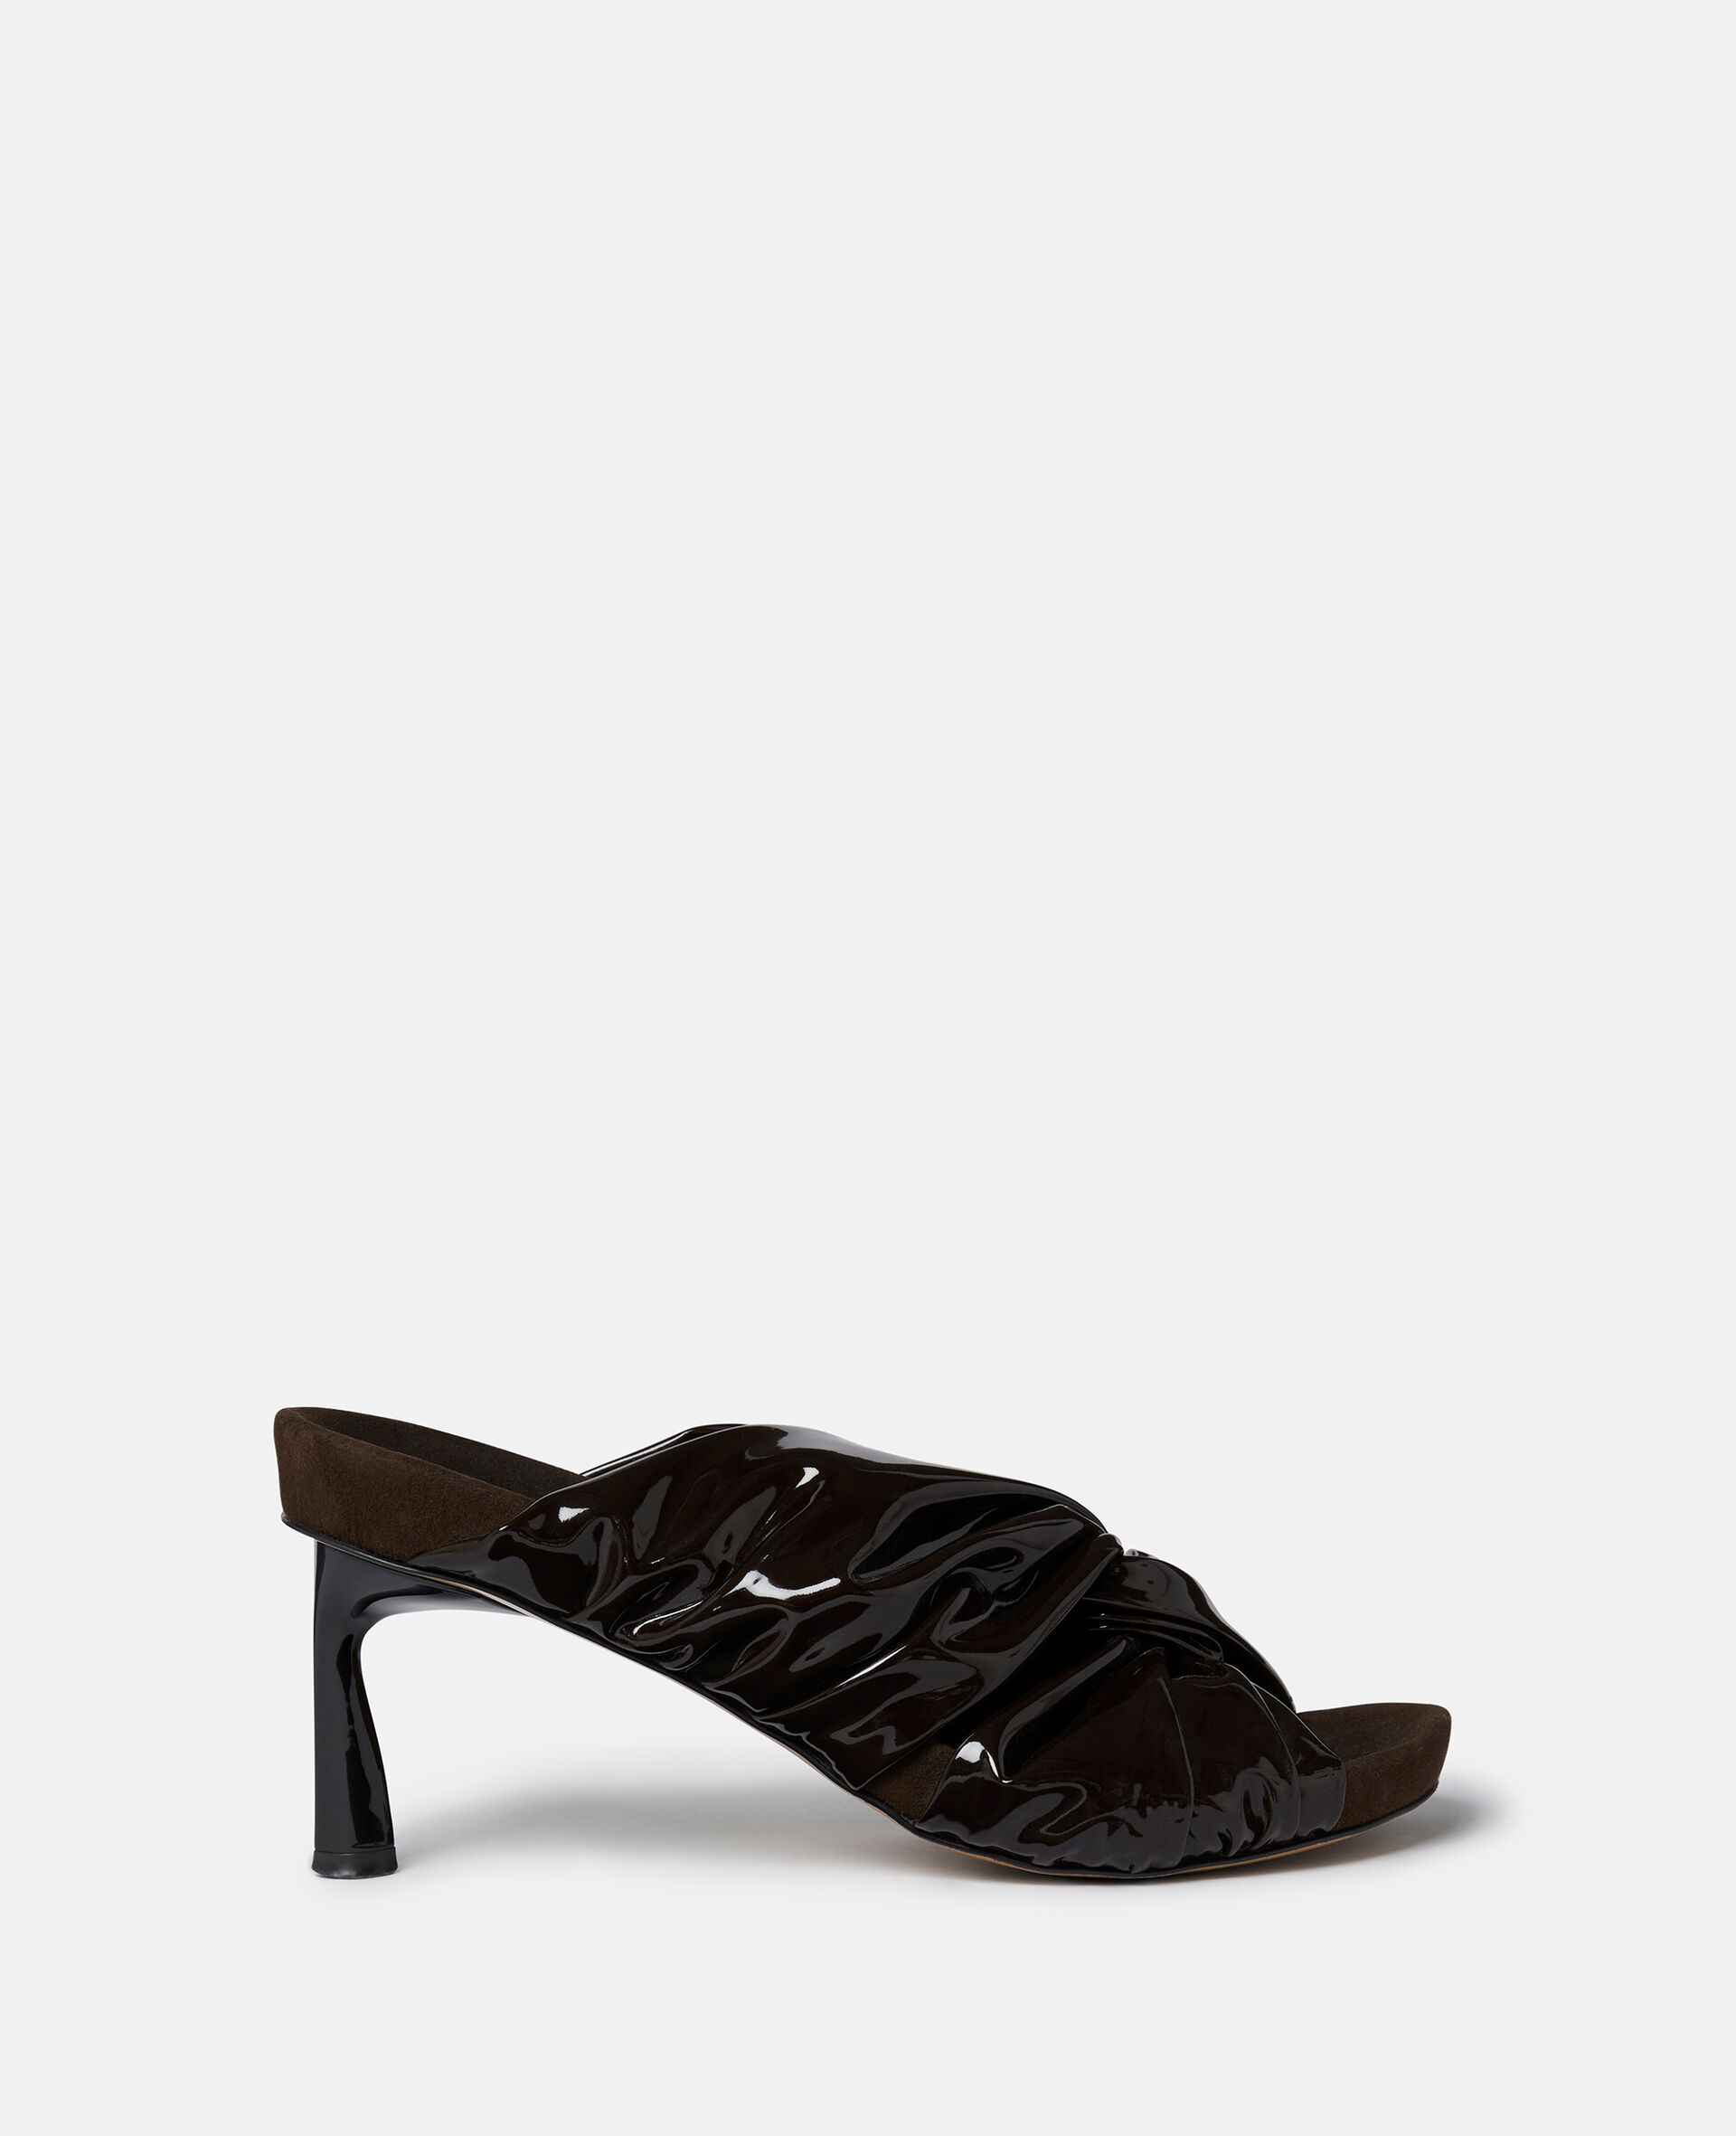 Terra绞绳式Alter Mat穆勒鞋-黑色-medium